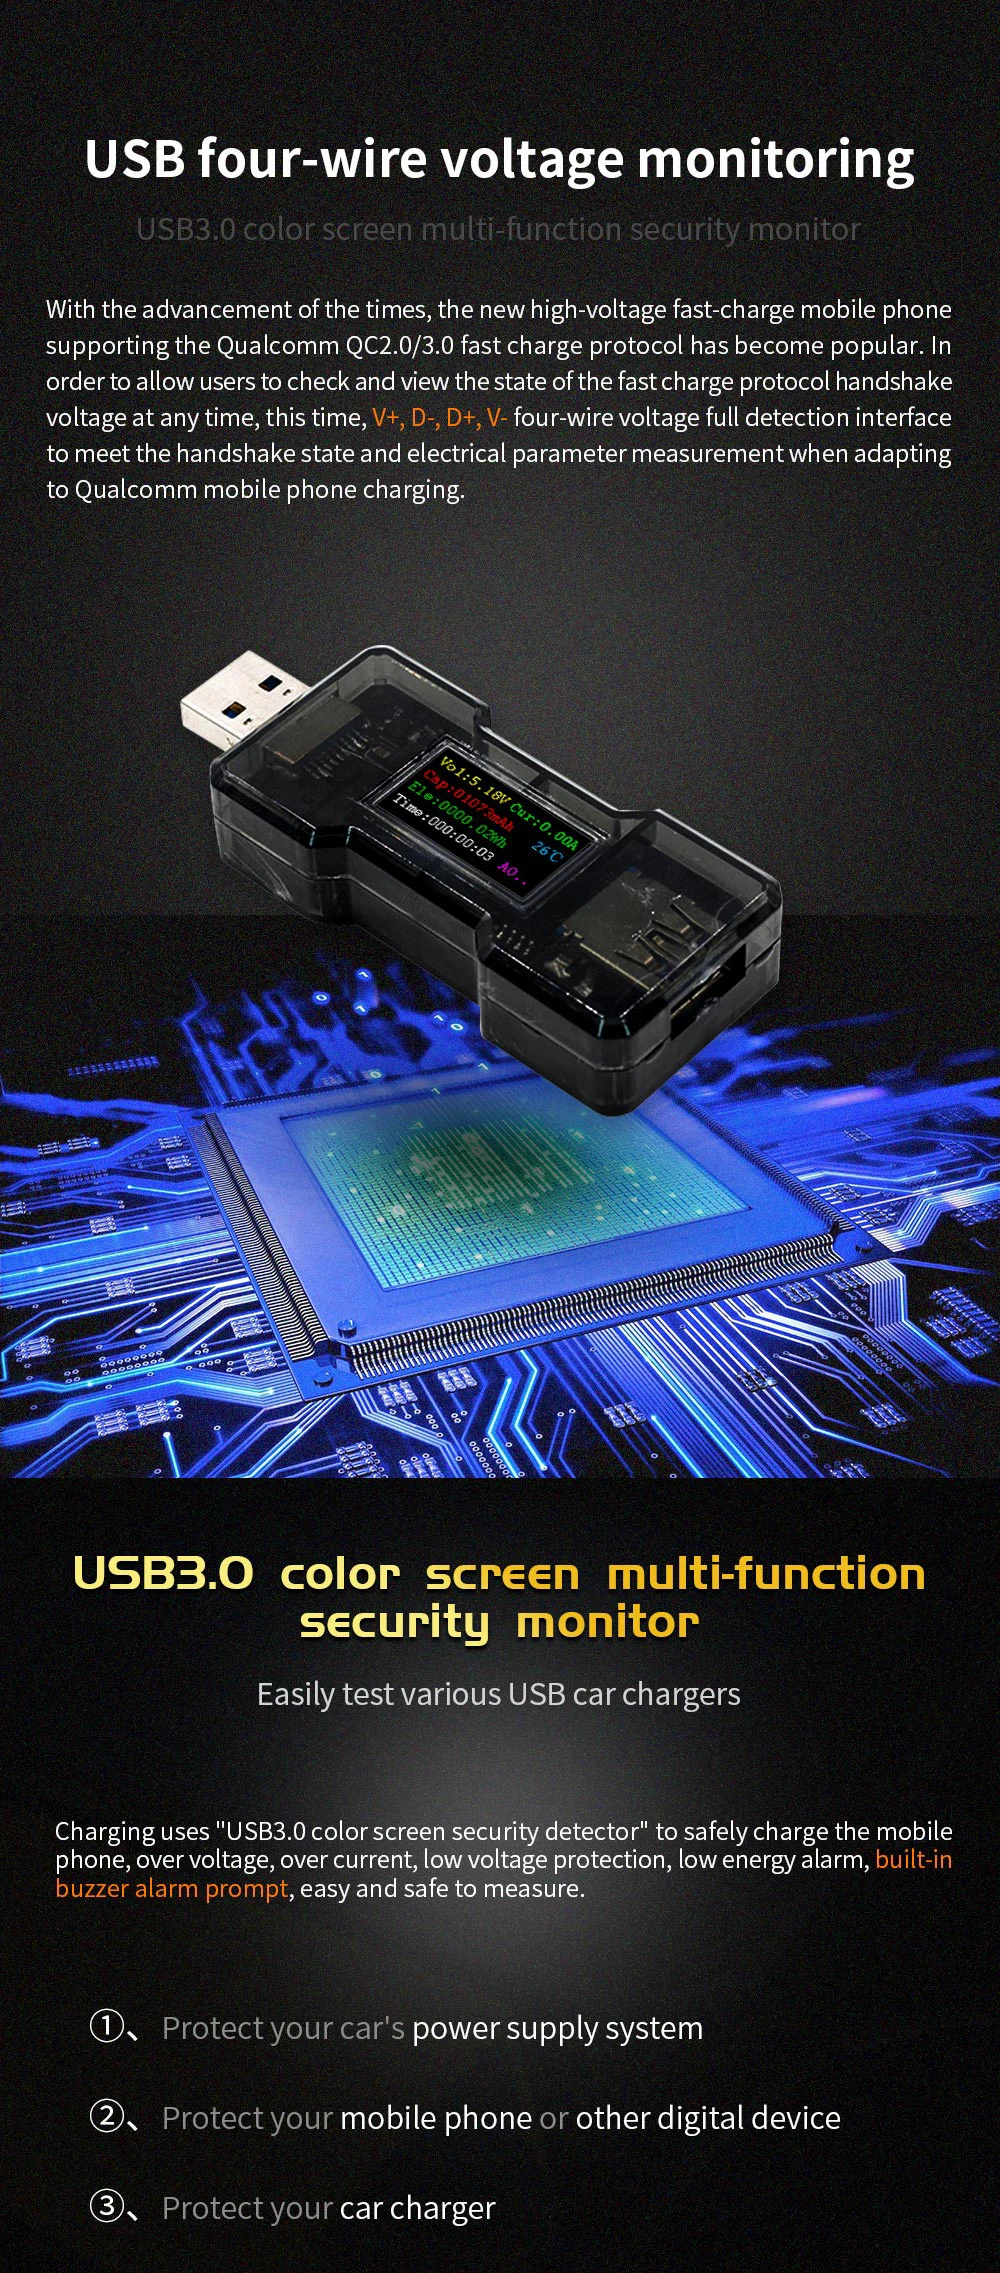 FNB18 USB Тестер DC Цифровой вольтметр amperimetro измеритель напряжения тока Ампер Вольты ампреметр детектор Банк питания зарядное устройство индикатор